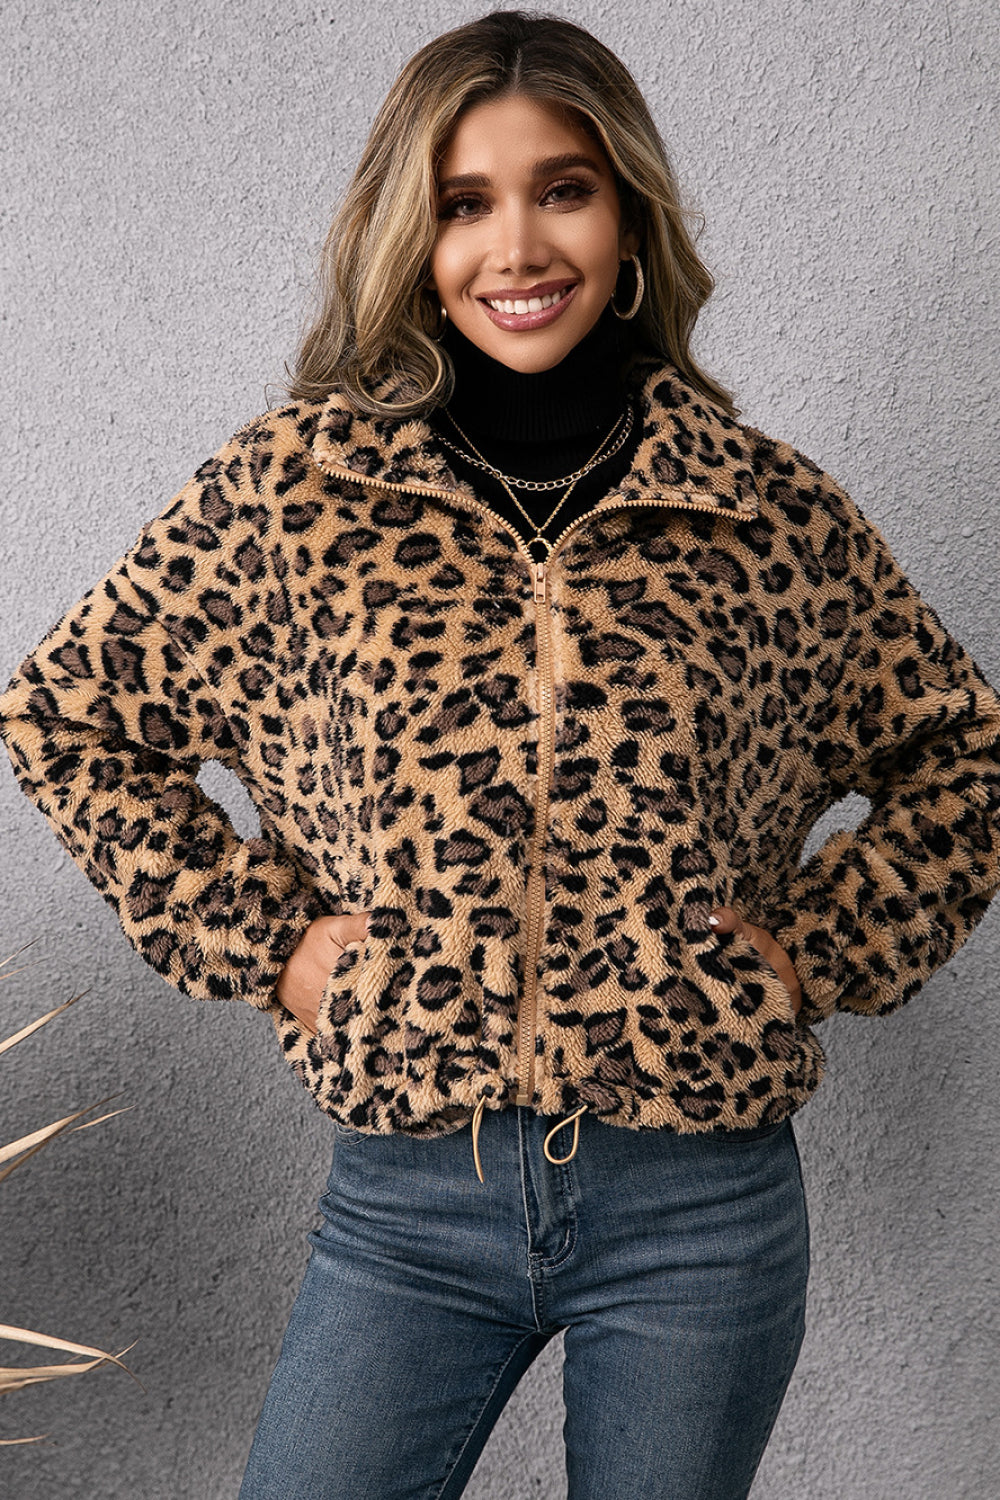 Leopard Zip Up Fleece Jacket with Pockets